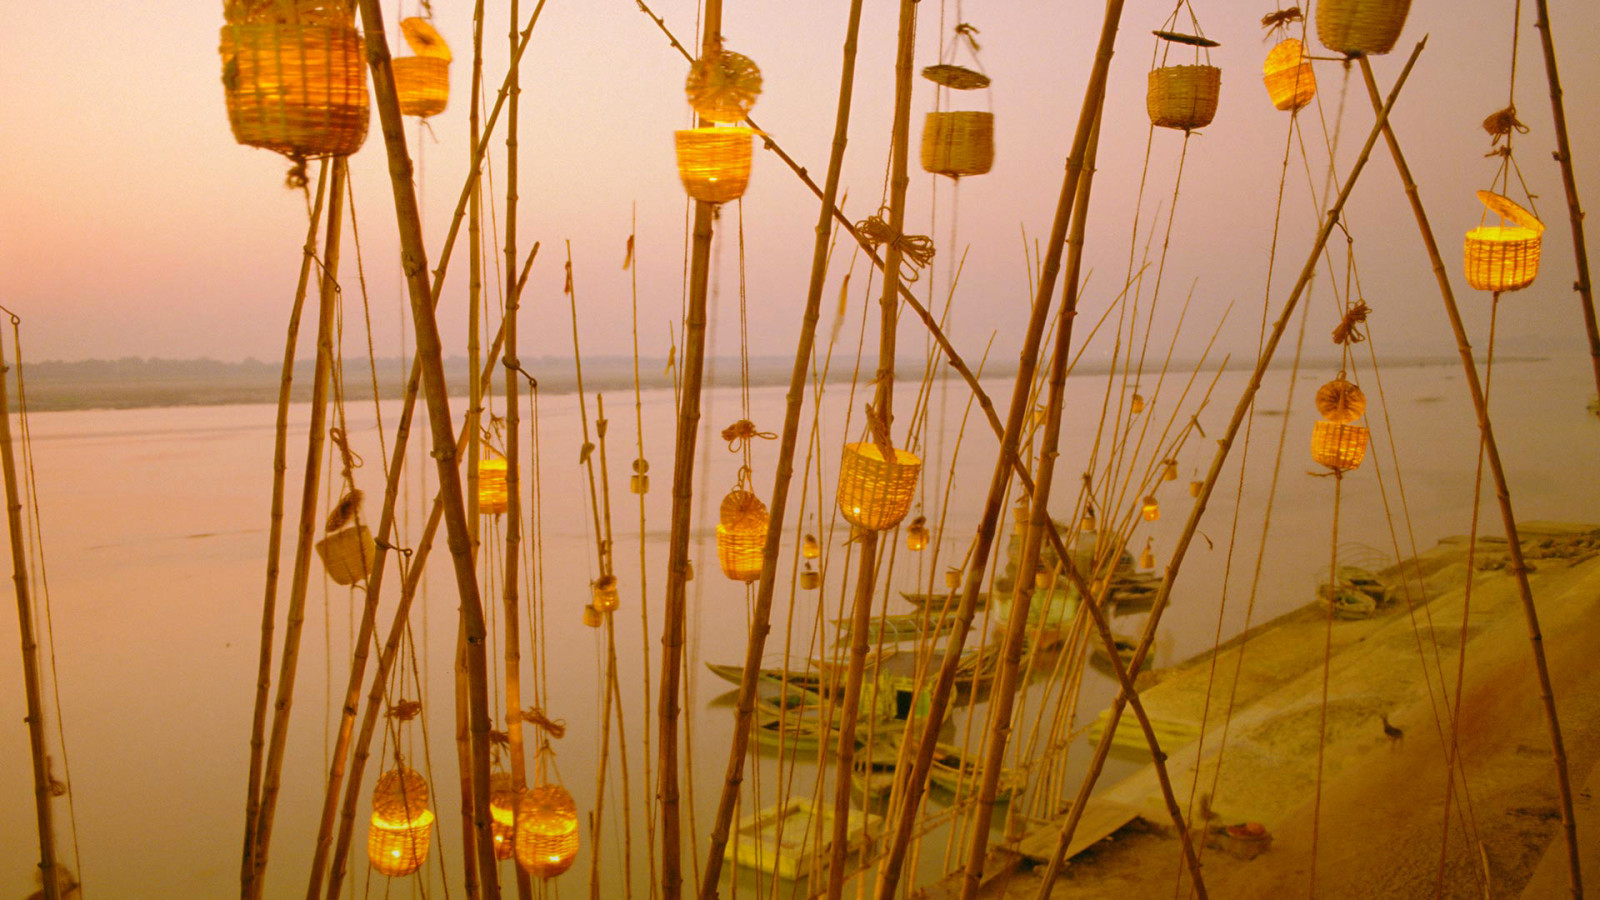 インド, ガンジス川, 提灯祭り, ウッタル・プラデーシュ